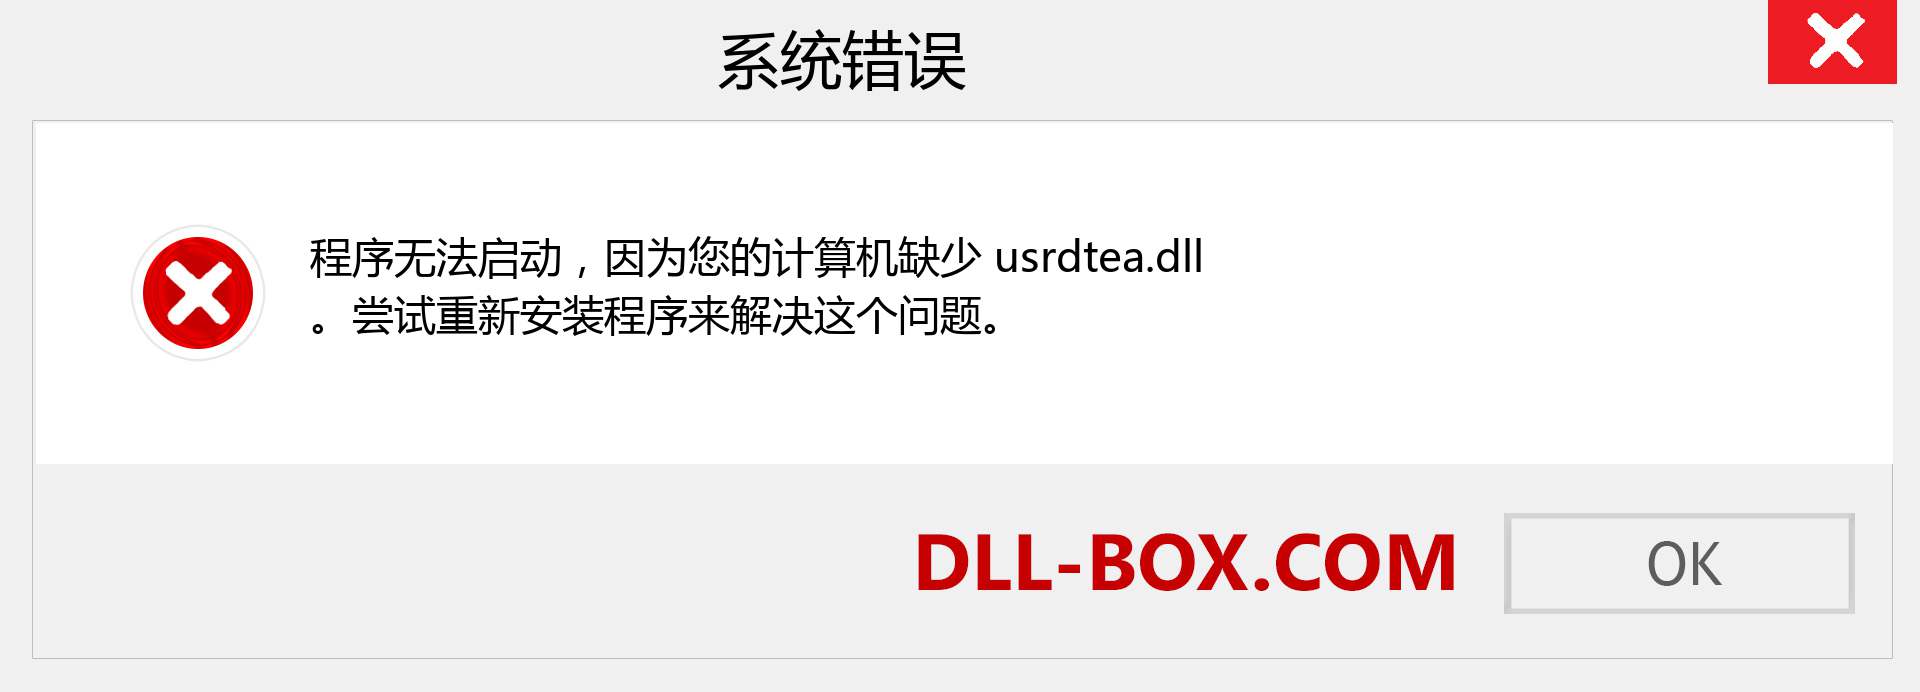 usrdtea.dll 文件丢失？。 适用于 Windows 7、8、10 的下载 - 修复 Windows、照片、图像上的 usrdtea dll 丢失错误